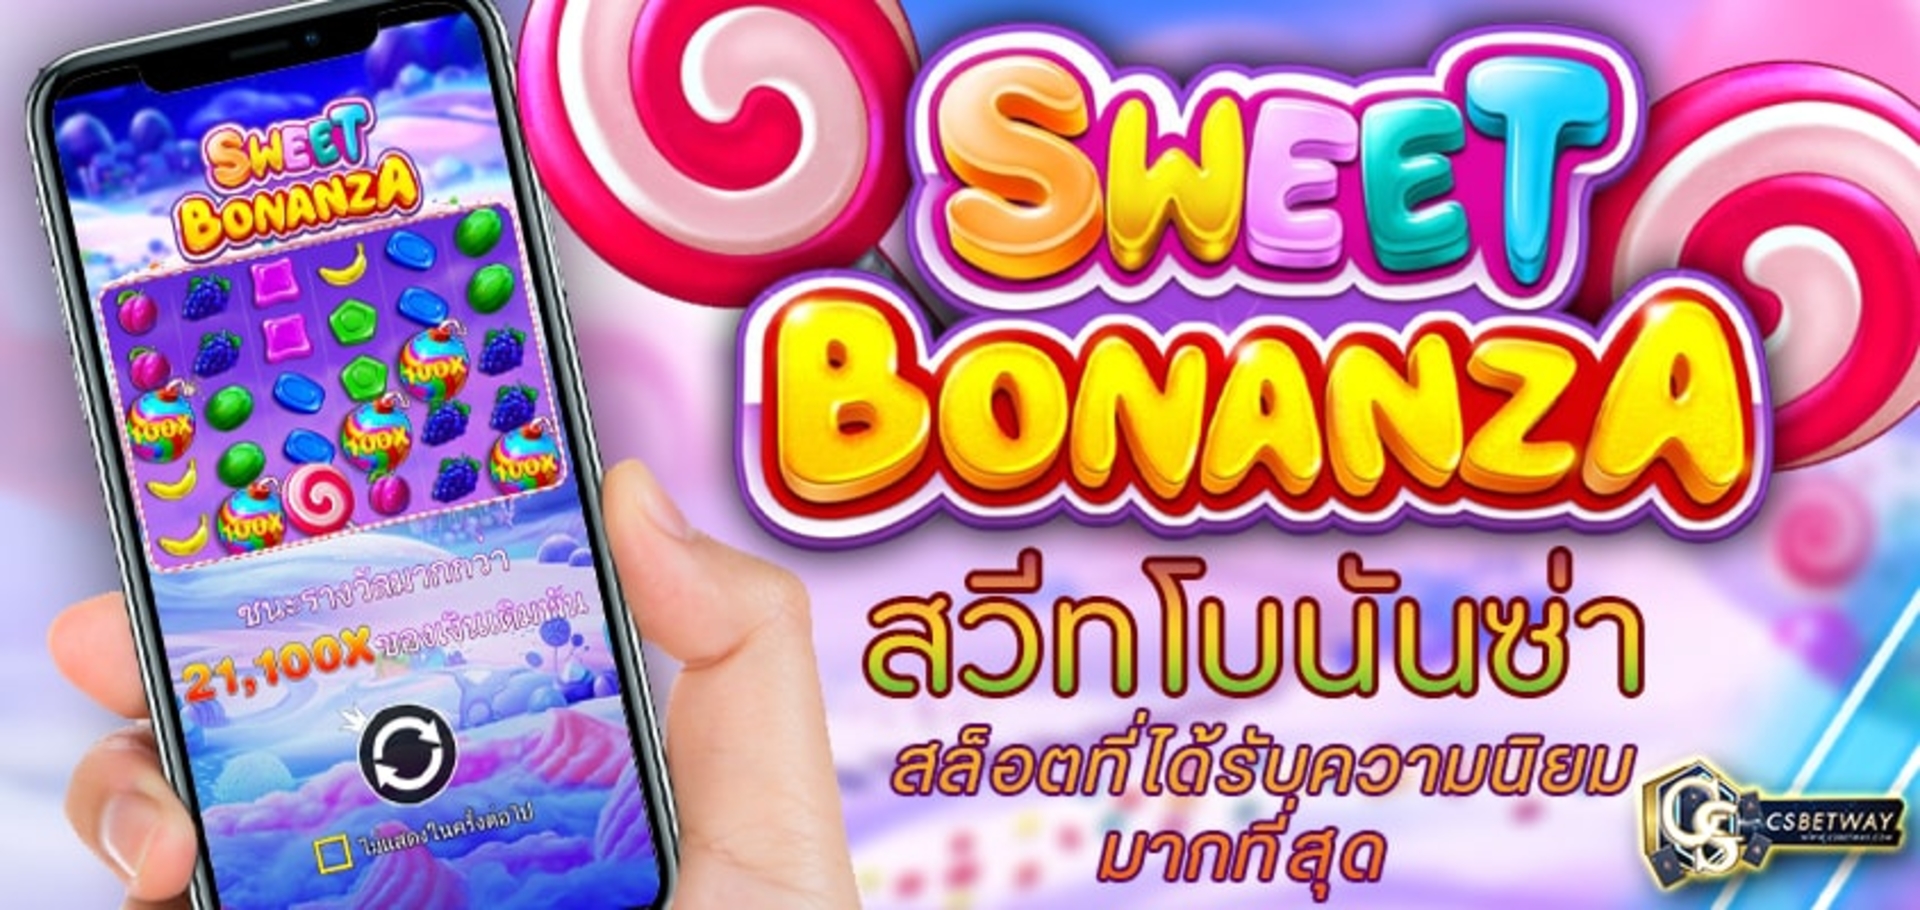 Sweet Bonanza สวีทโบนันซ่า สล็อตออนไลน์